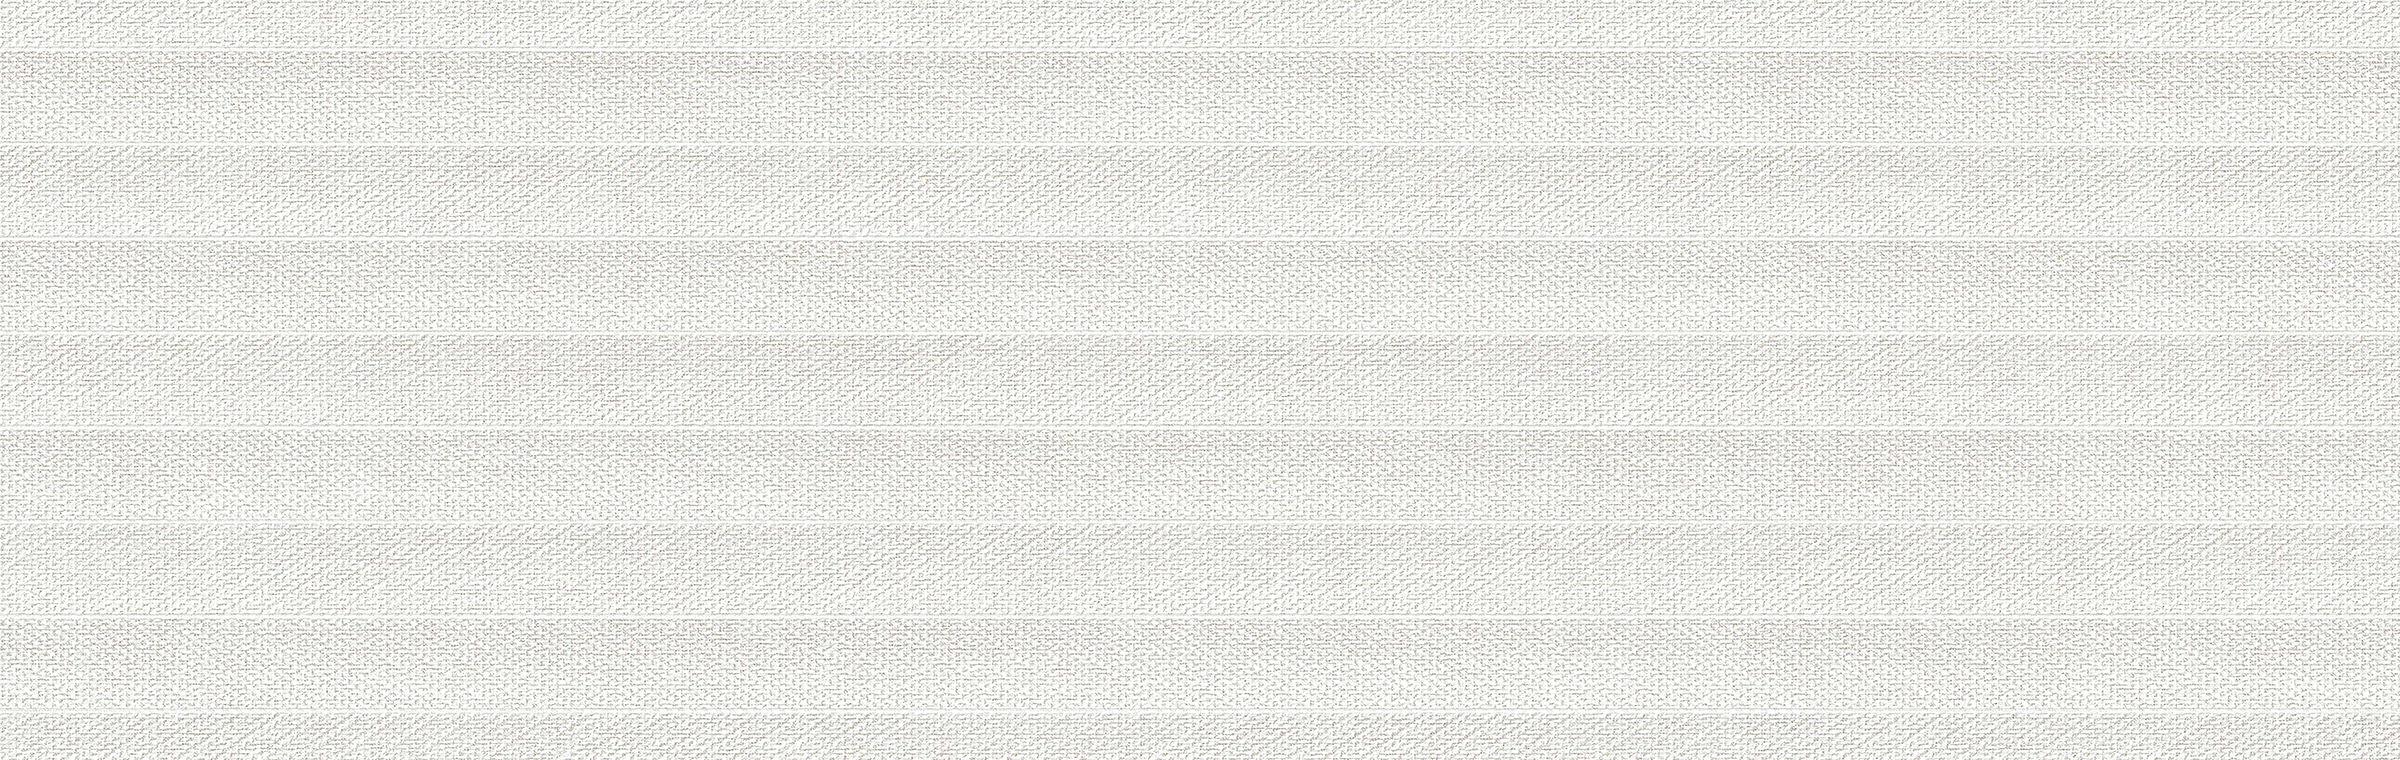 Textile 13x39 White Textured Matte Ceramic Wall Tile